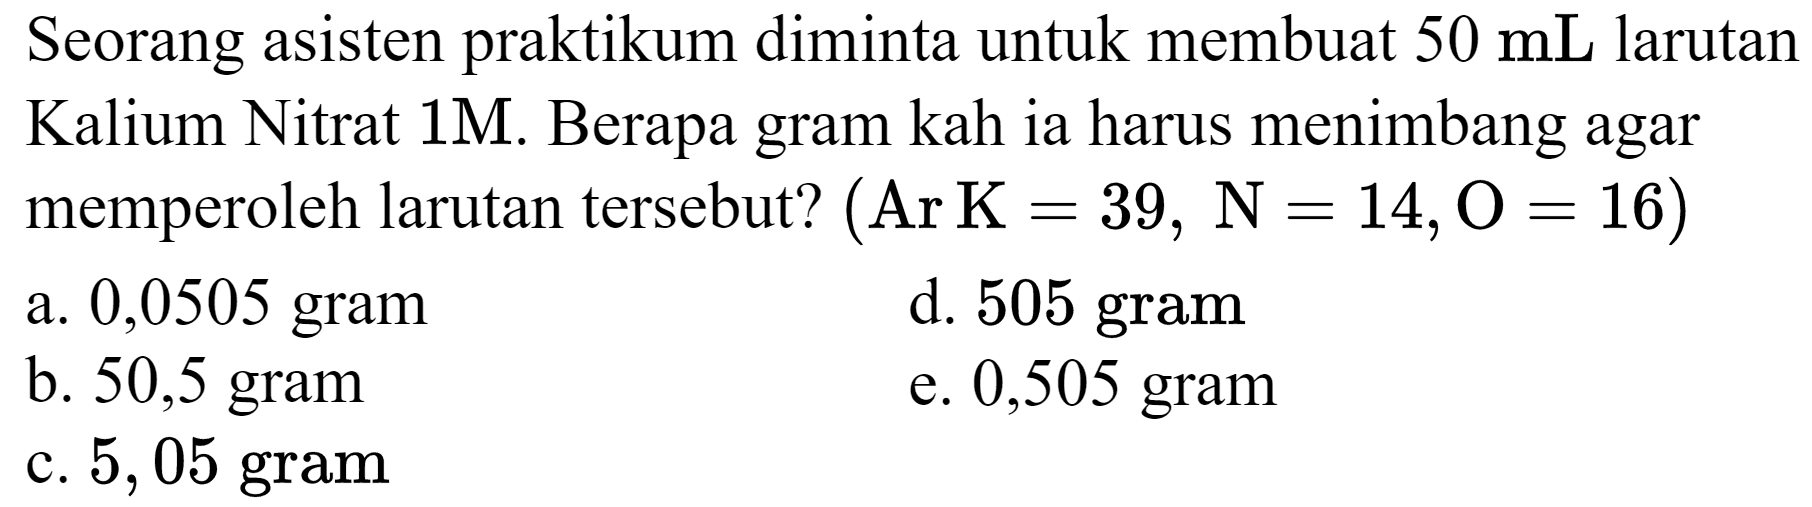 Seorang asisten praktikum diminta untuk membuat 50 mL larutan Kalium Nitrat 1 M. Berapa gram kah ia harus menimbang agar memperoleh larutan tersebut? (Ar K=39, N=14, O=16)